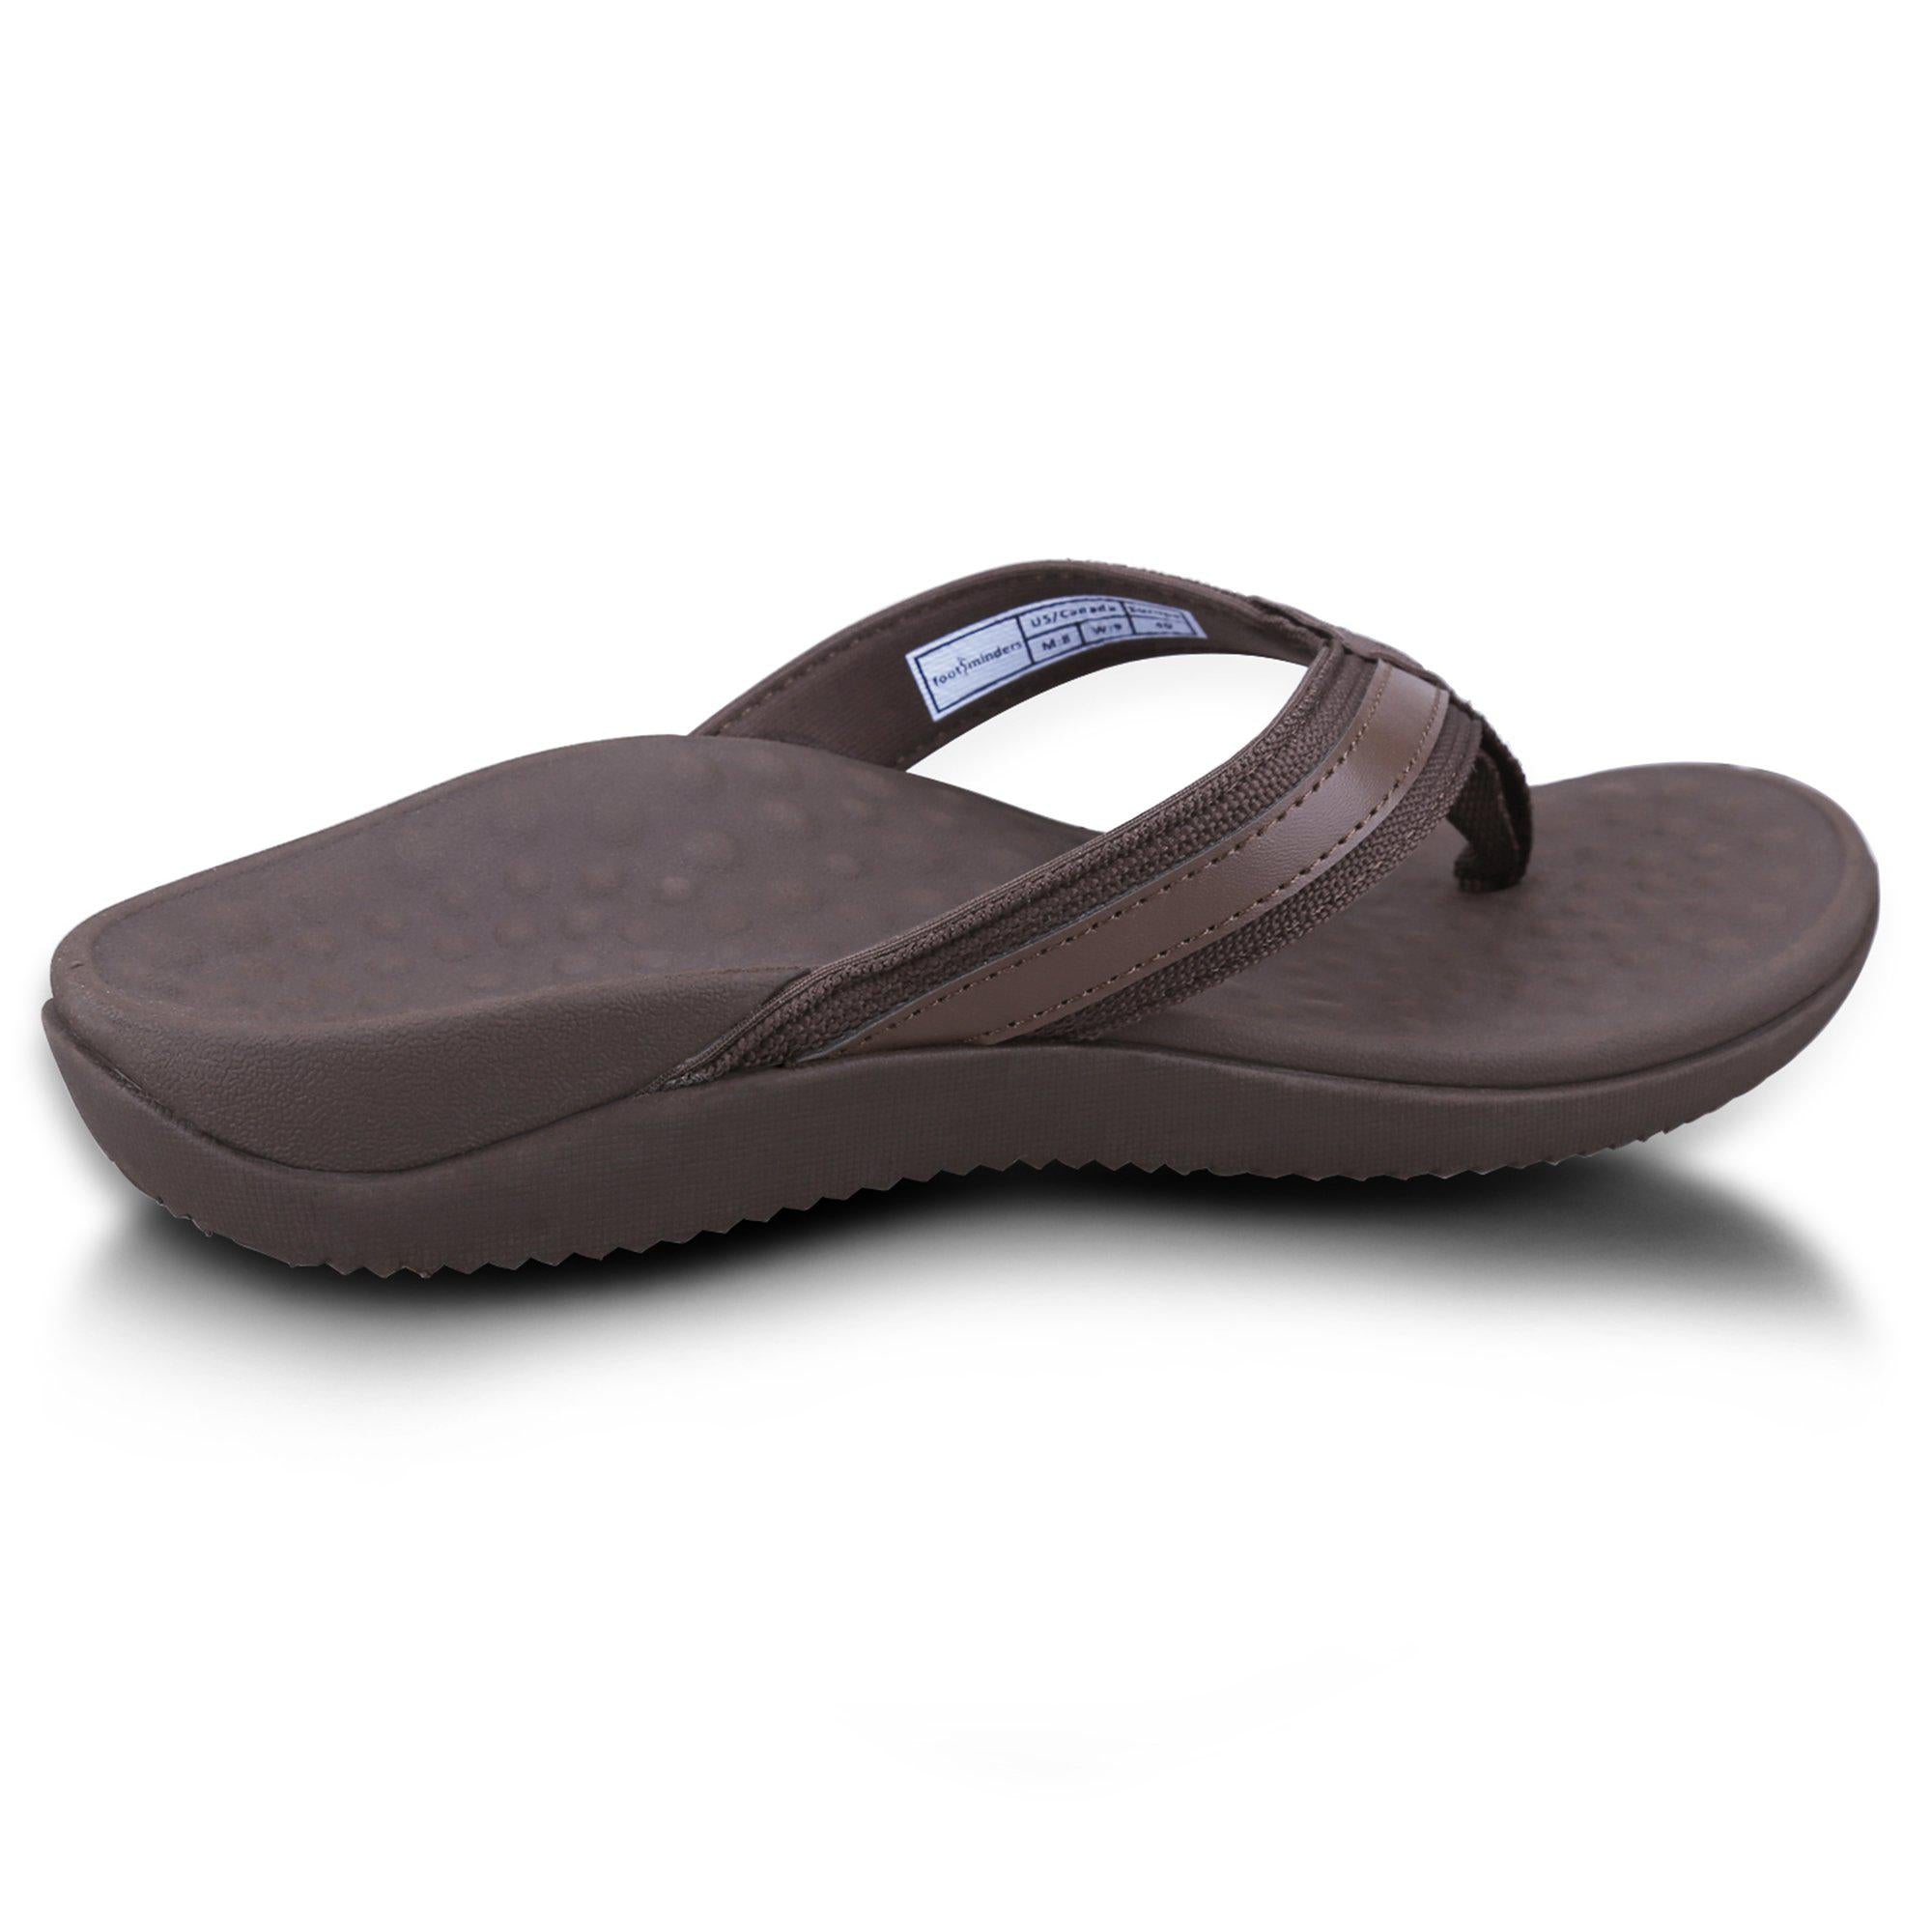 flip flops with heel support